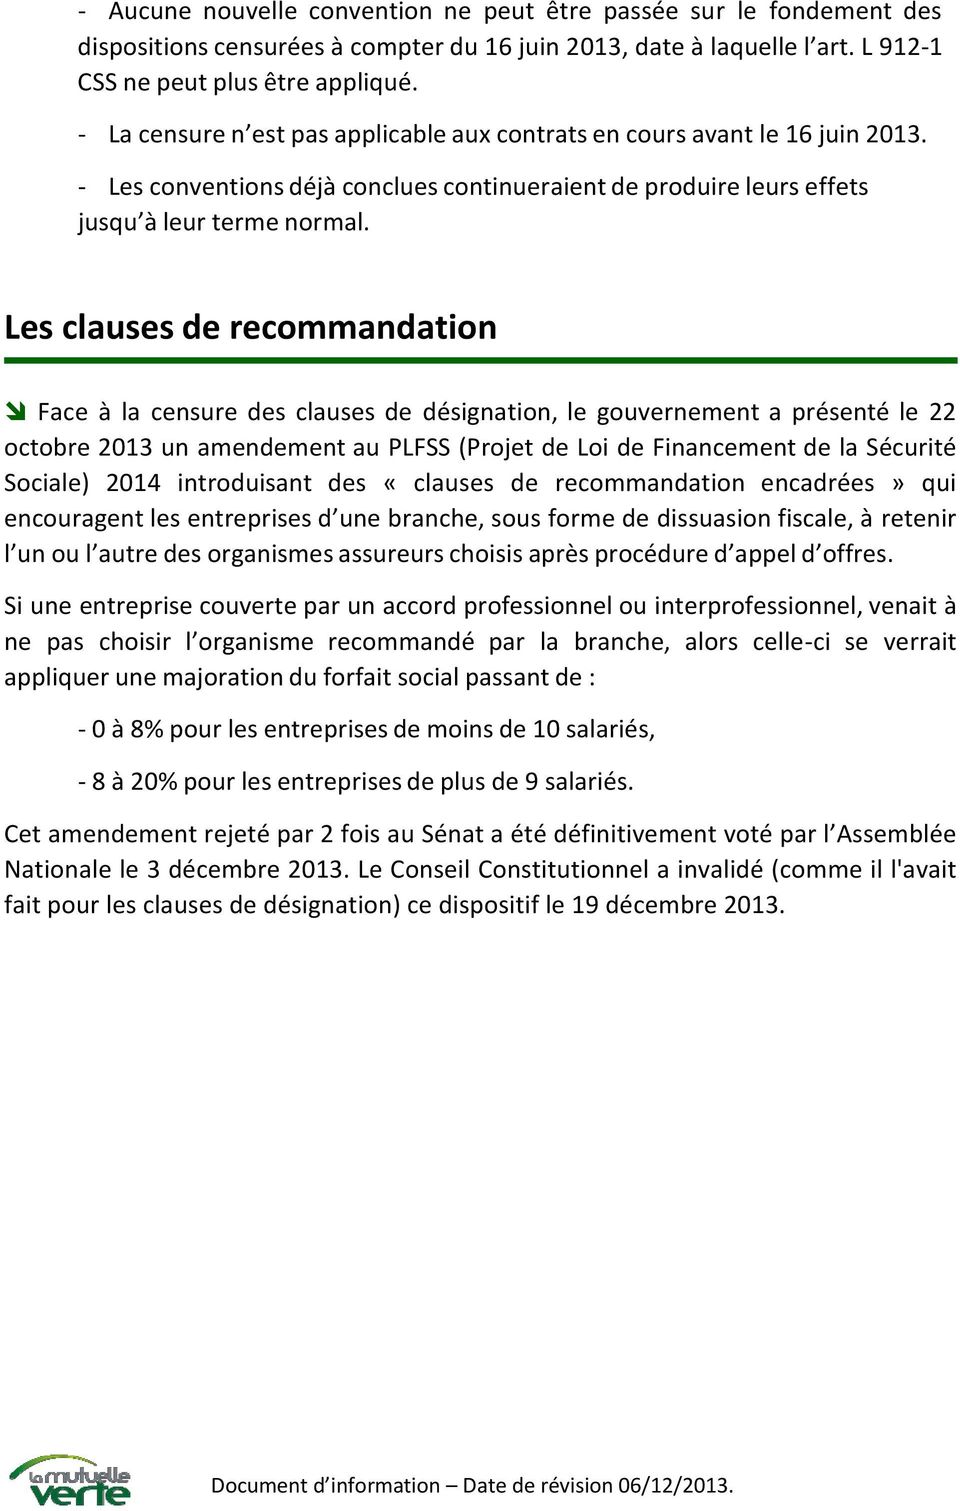 Les clauses de recommandation Face à la censure des clauses de désignation, le gouvernement a présenté le 22 octobre 2013 un amendement au PLFSS (Projet de Loi de Financement de la Sécurité Sociale)